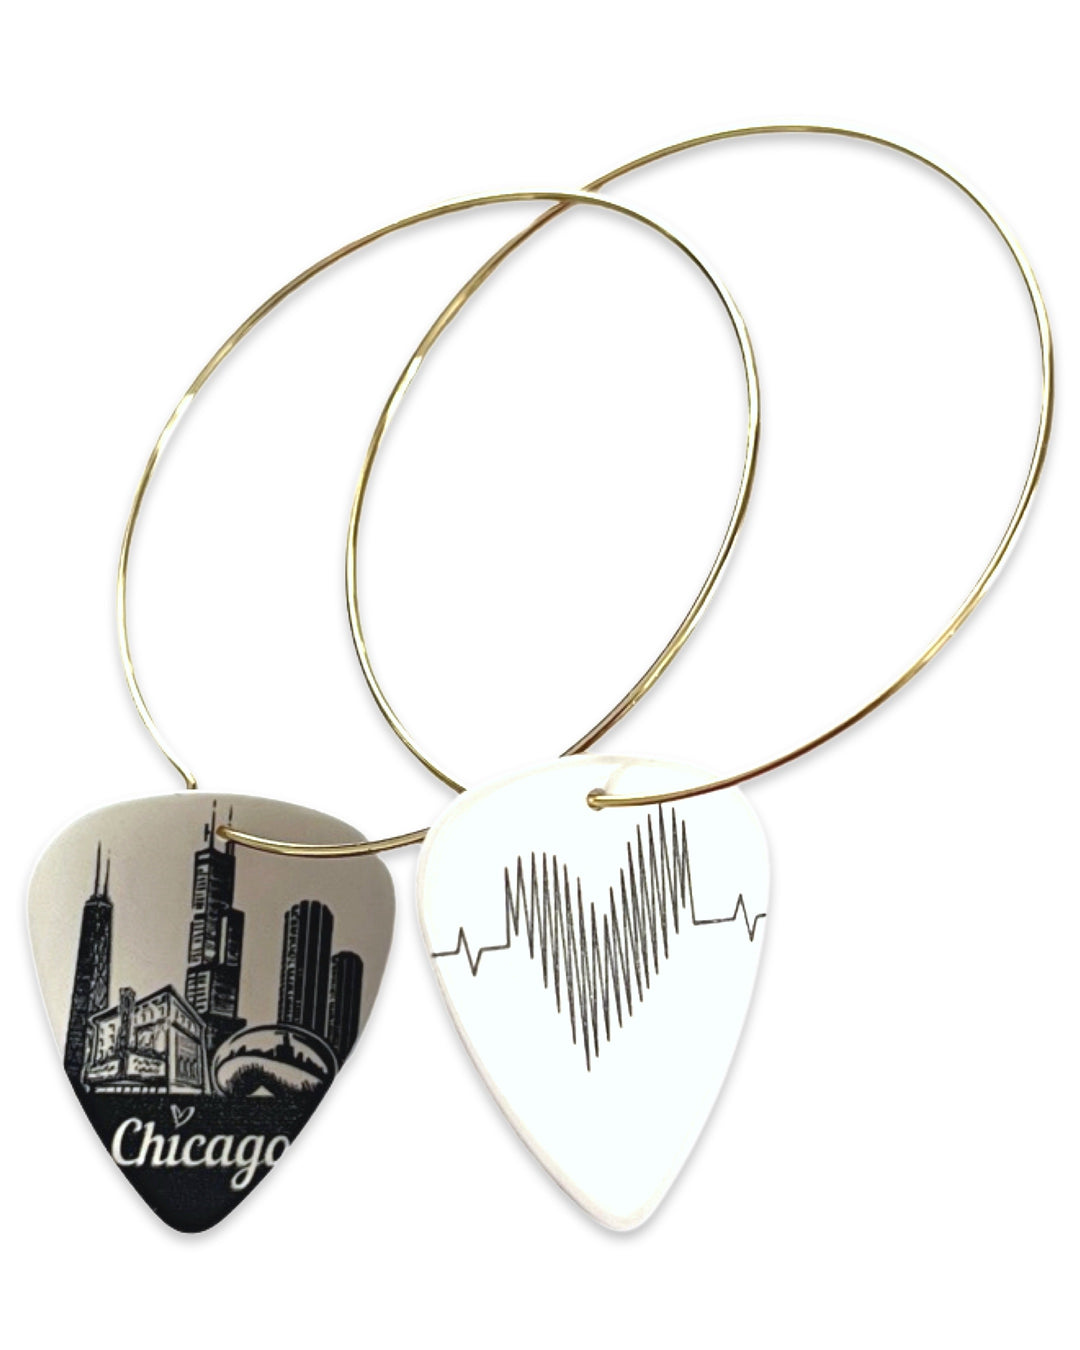 Chicago Black & White Skyline Reversible Single Guitar Pick Earrings